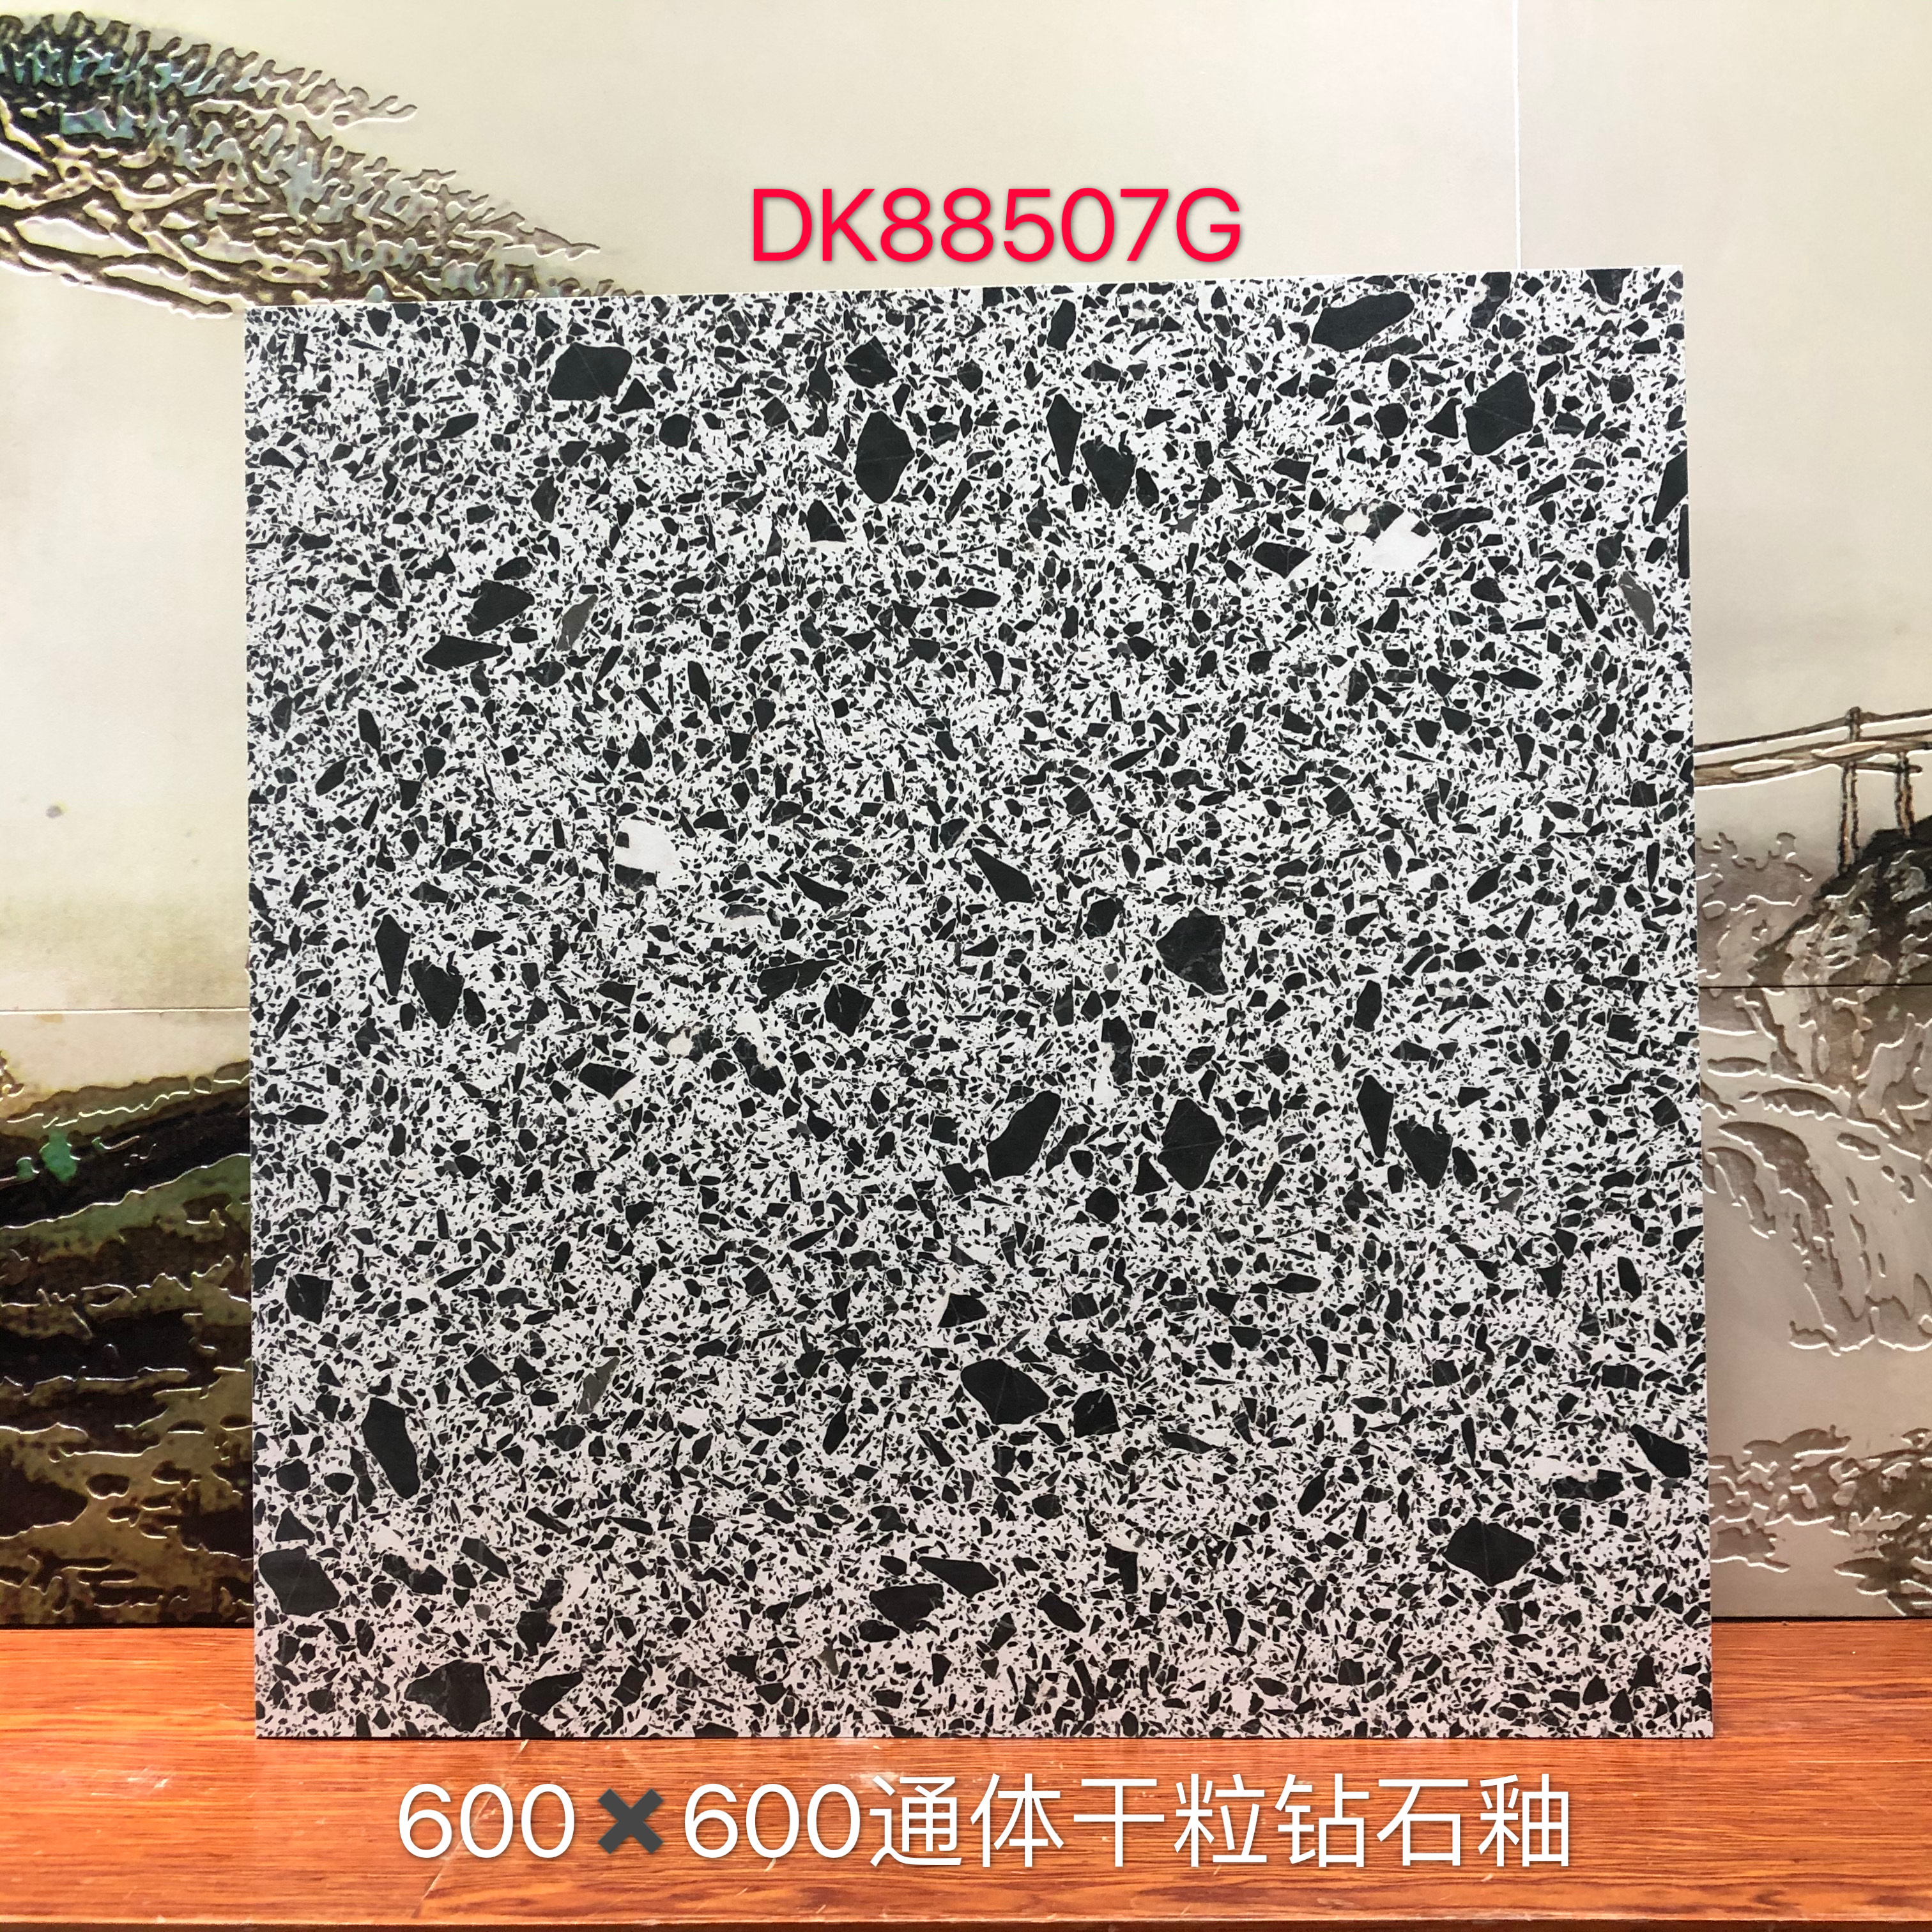 DK88507G